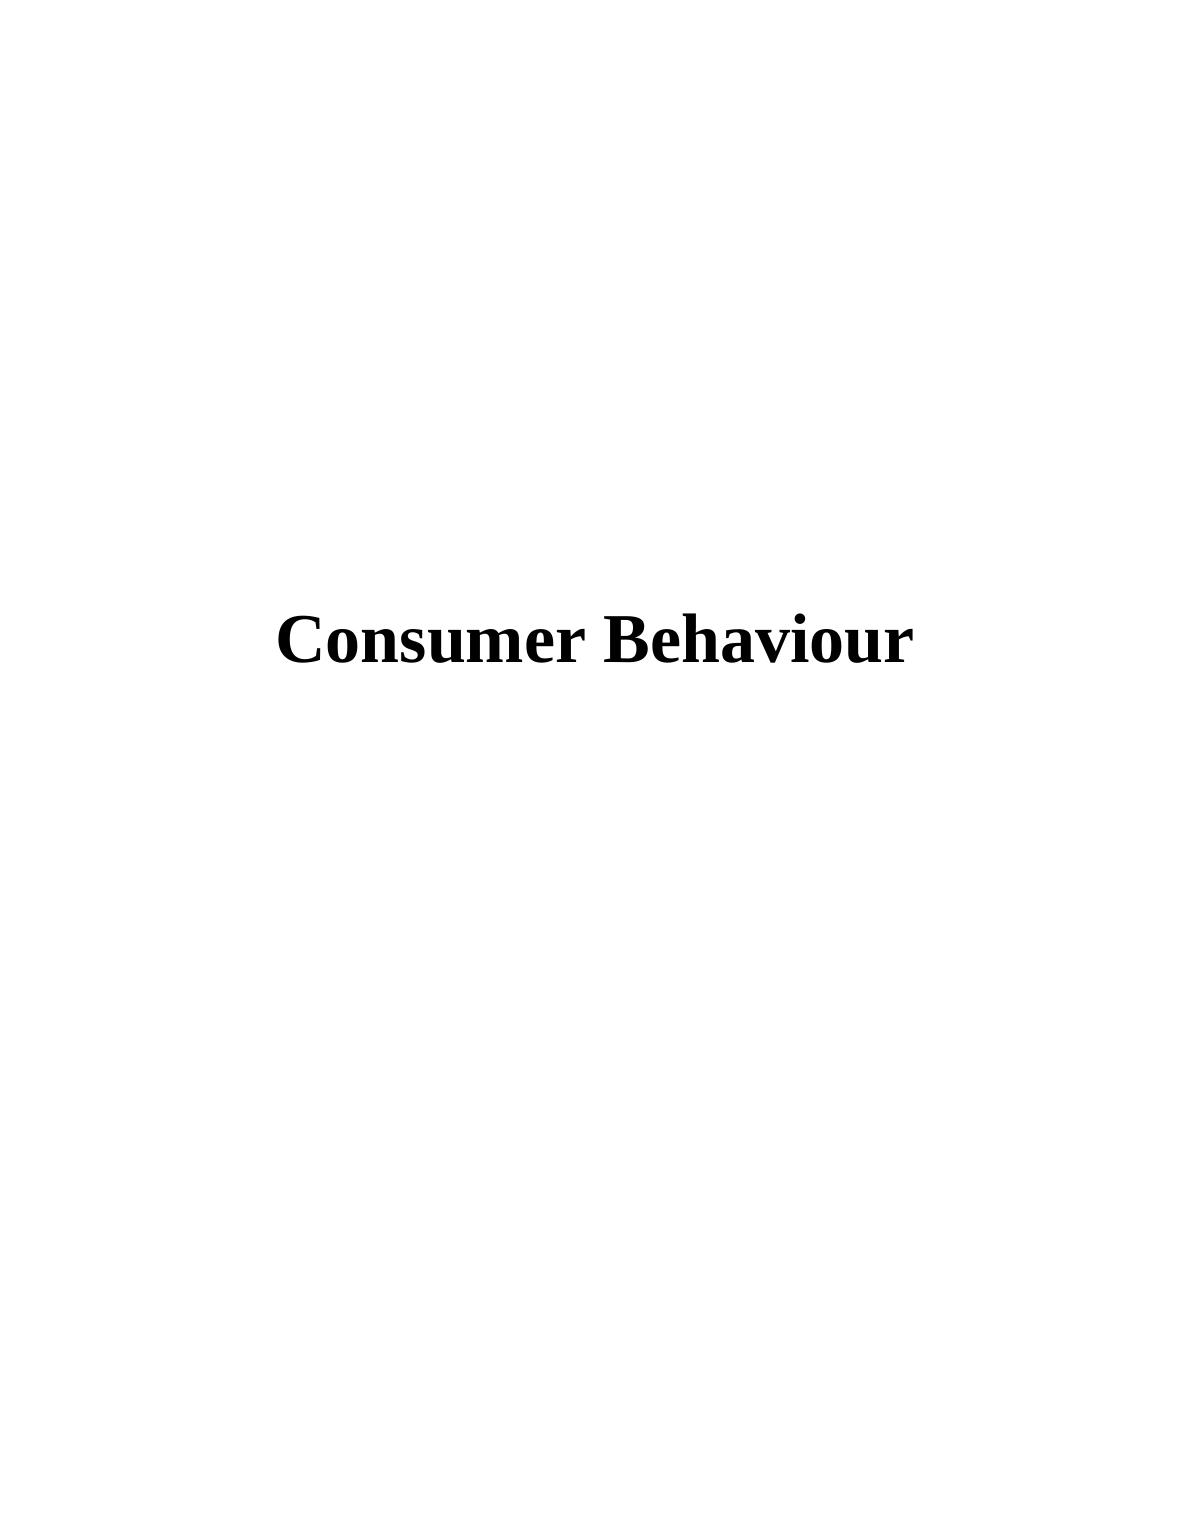 consumer behaviour assignment